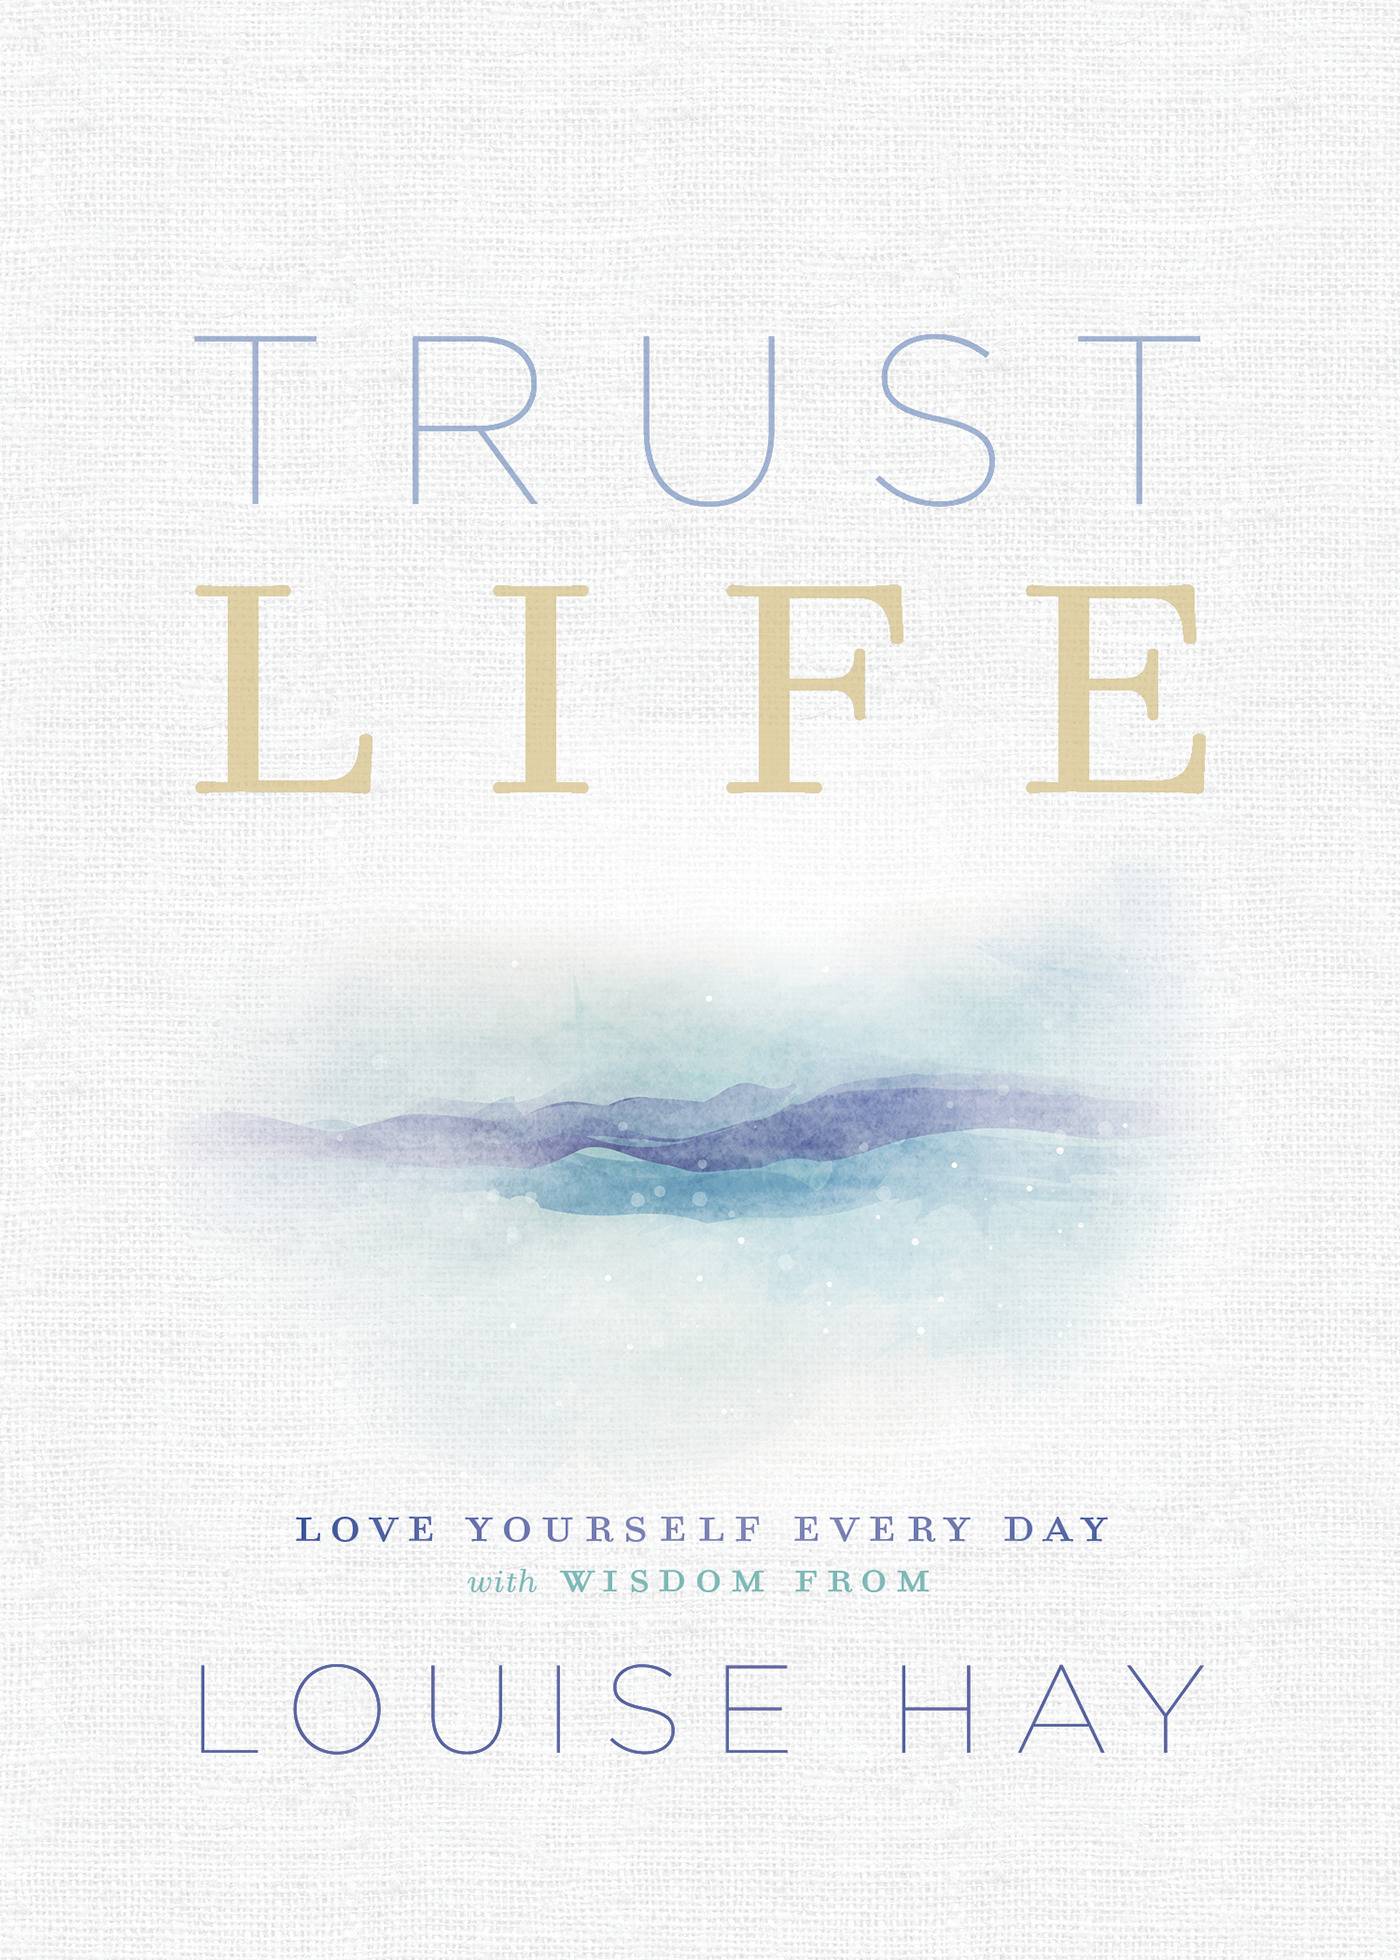 Trust Life